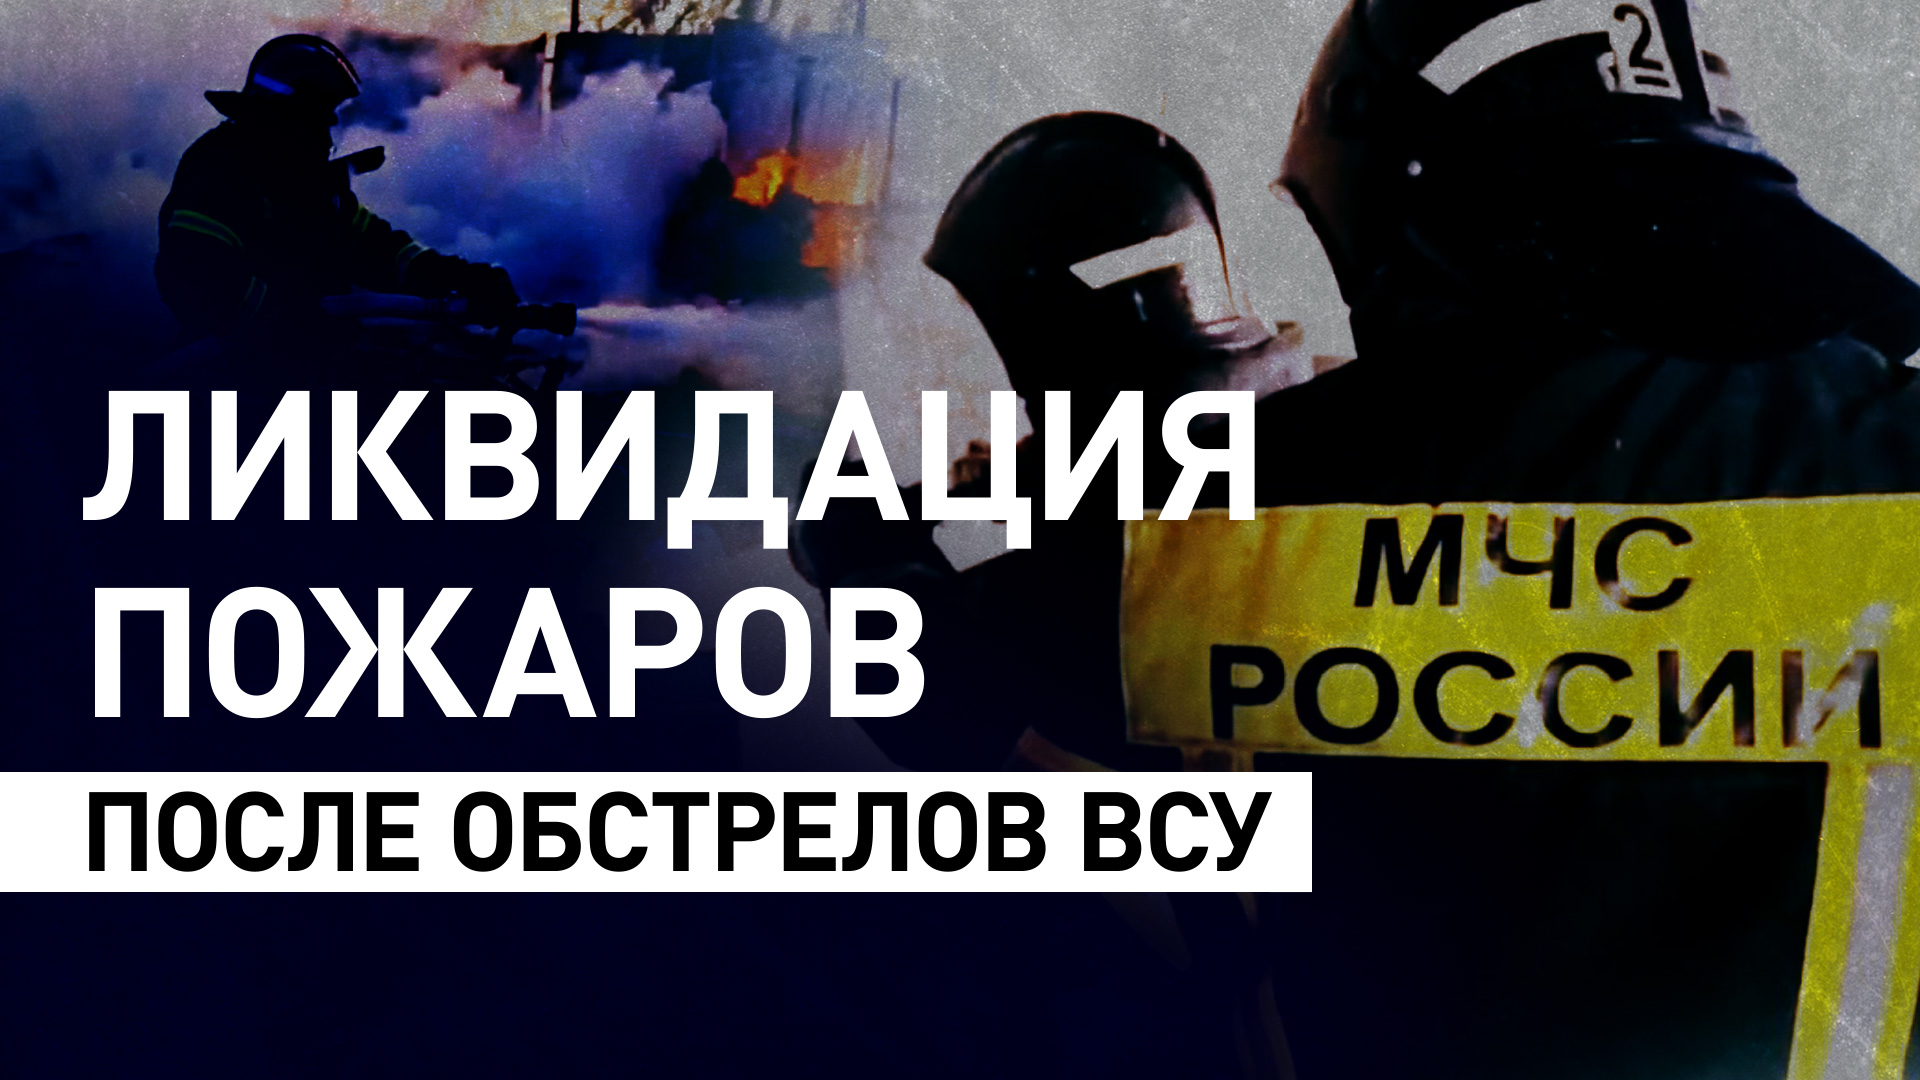 Сотрудники МЧС России борются с пожарами после обстрелов в Белгородской области — видео